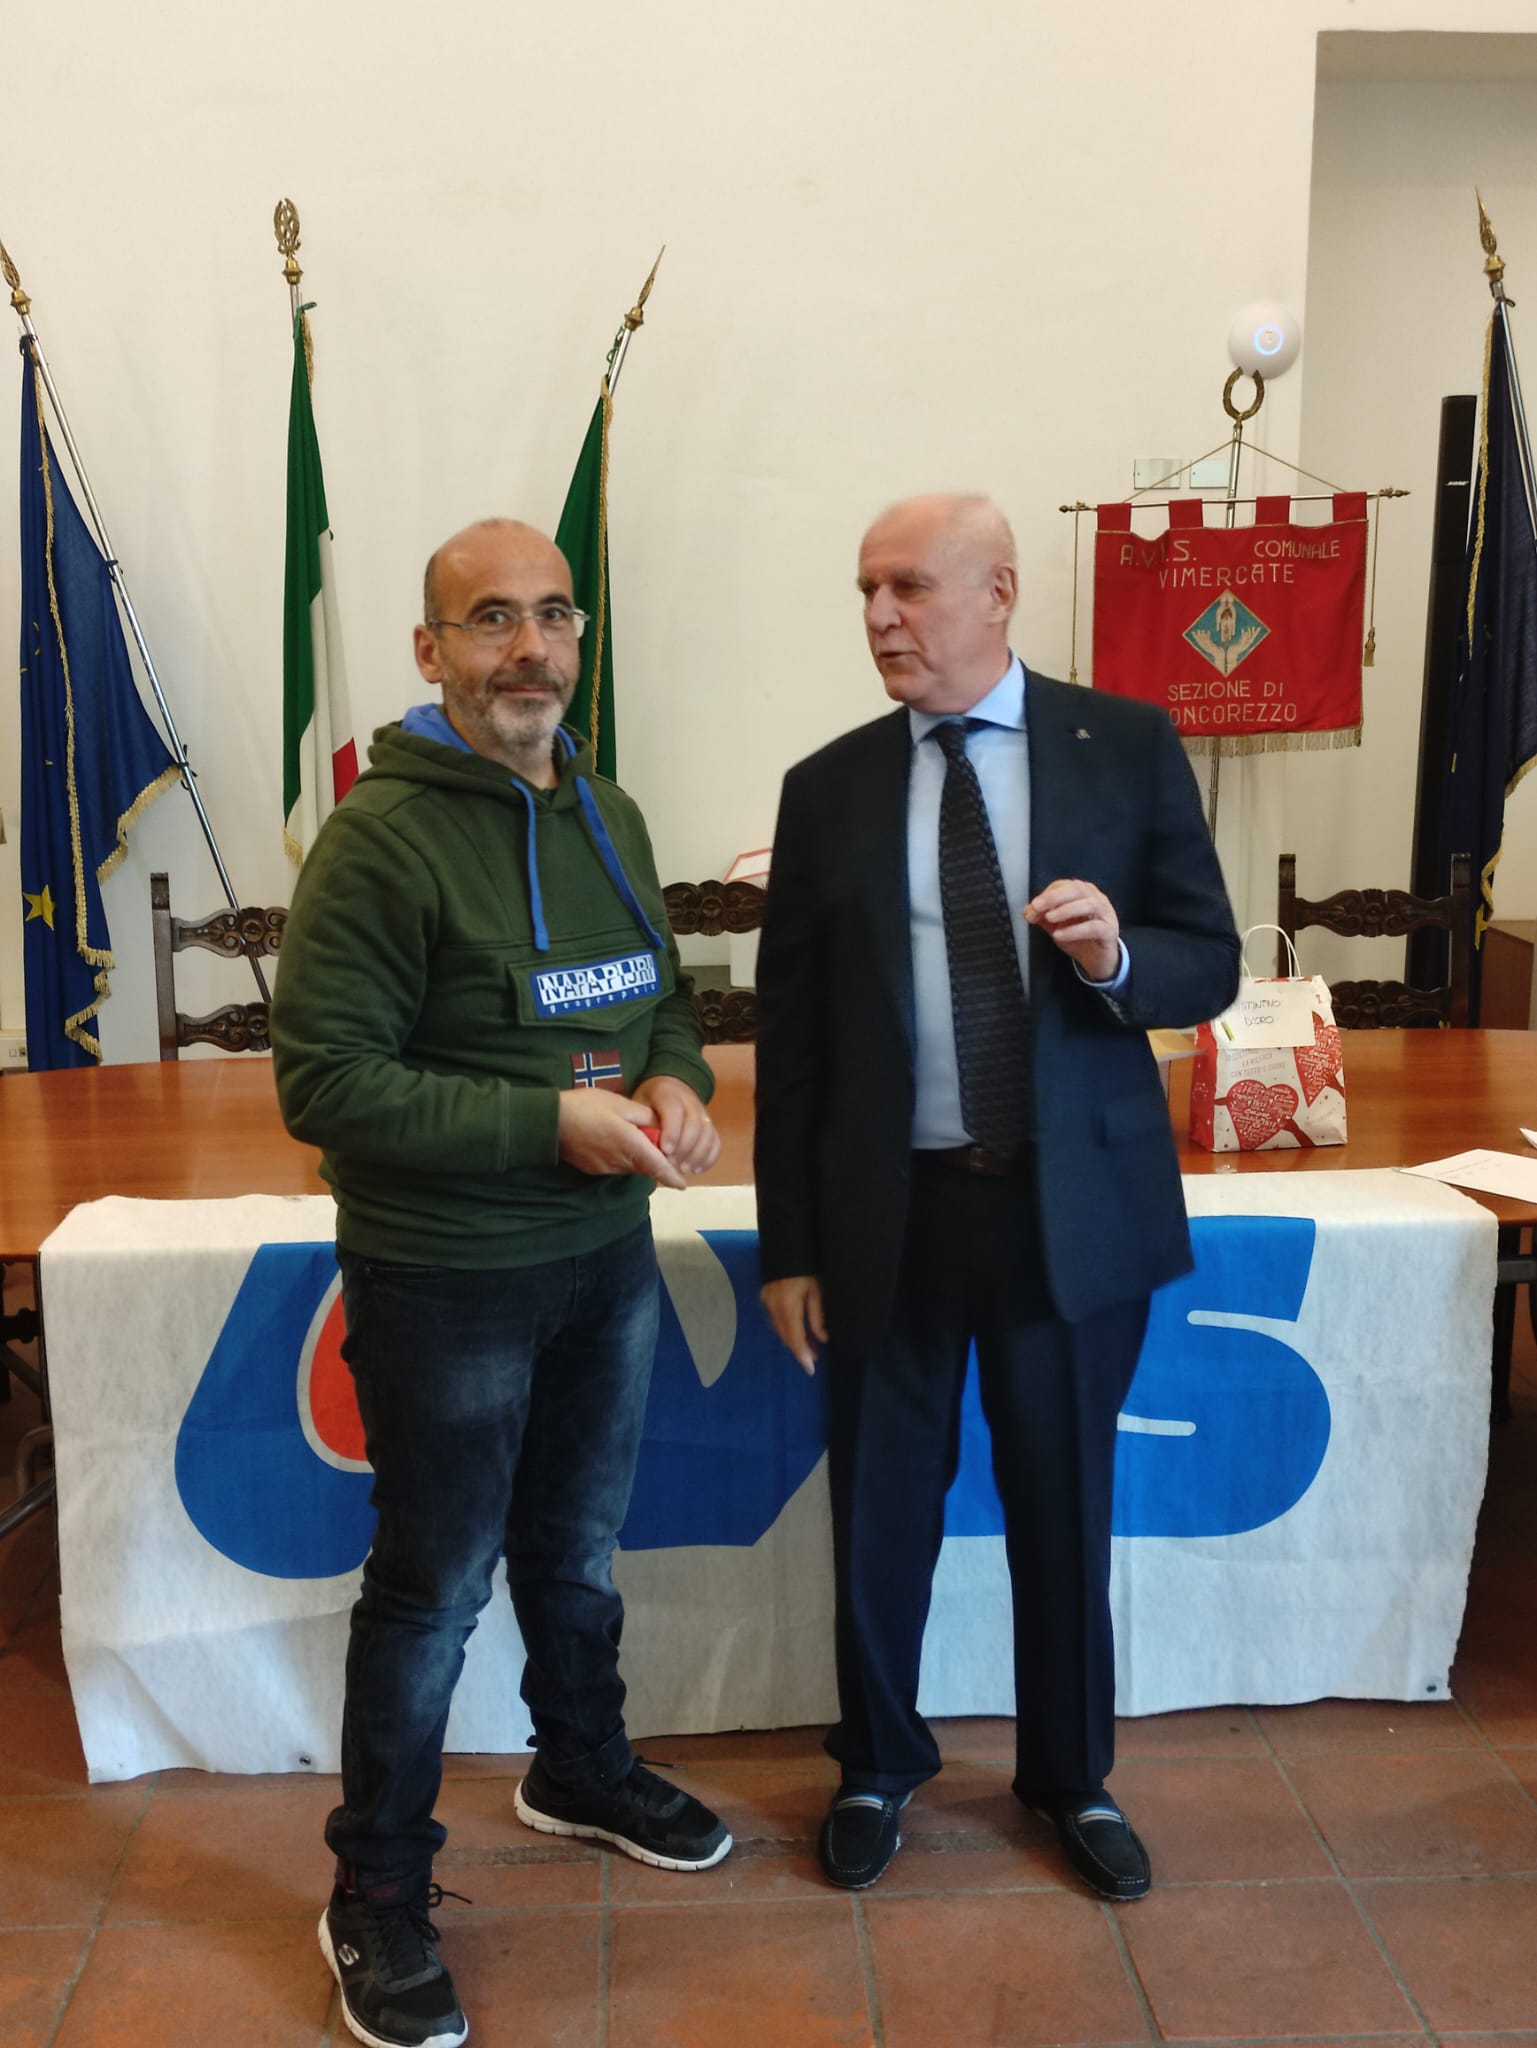 Concorezzo premiazioni donatori Avis  da destra Marco Gravellini e presidente Avis Vimercate Fausto Galbiati